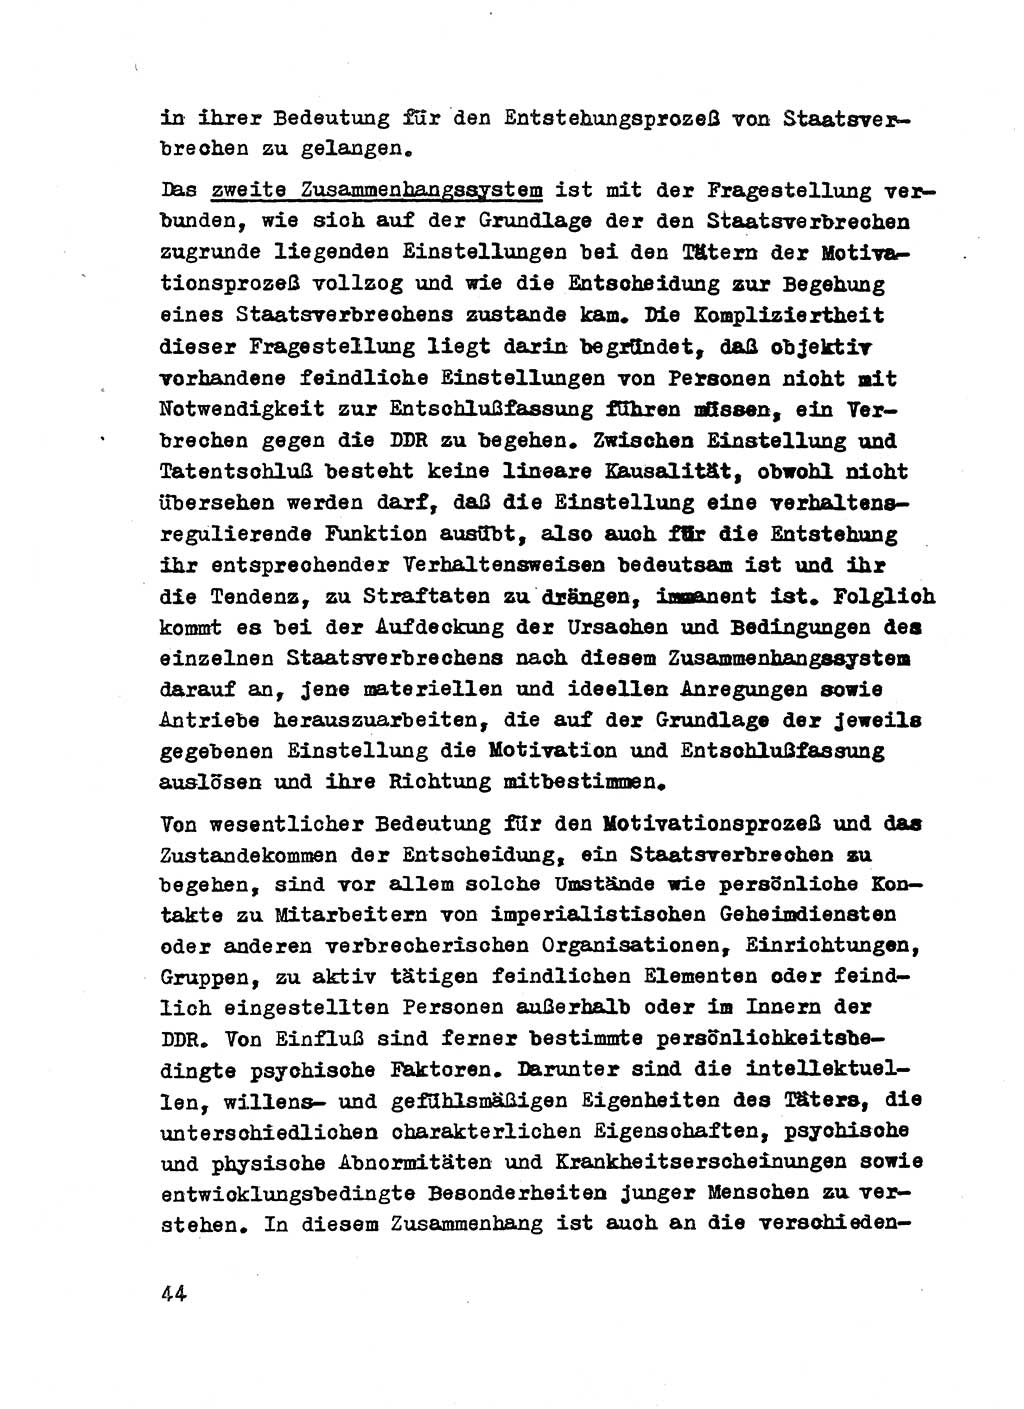 Strafrecht der DDR (Deutsche Demokratische Republik), Besonderer Teil, Lehrmaterial, Heft 2 1969, Seite 44 (Strafr. DDR BT Lehrmat. H. 2 1969, S. 44)